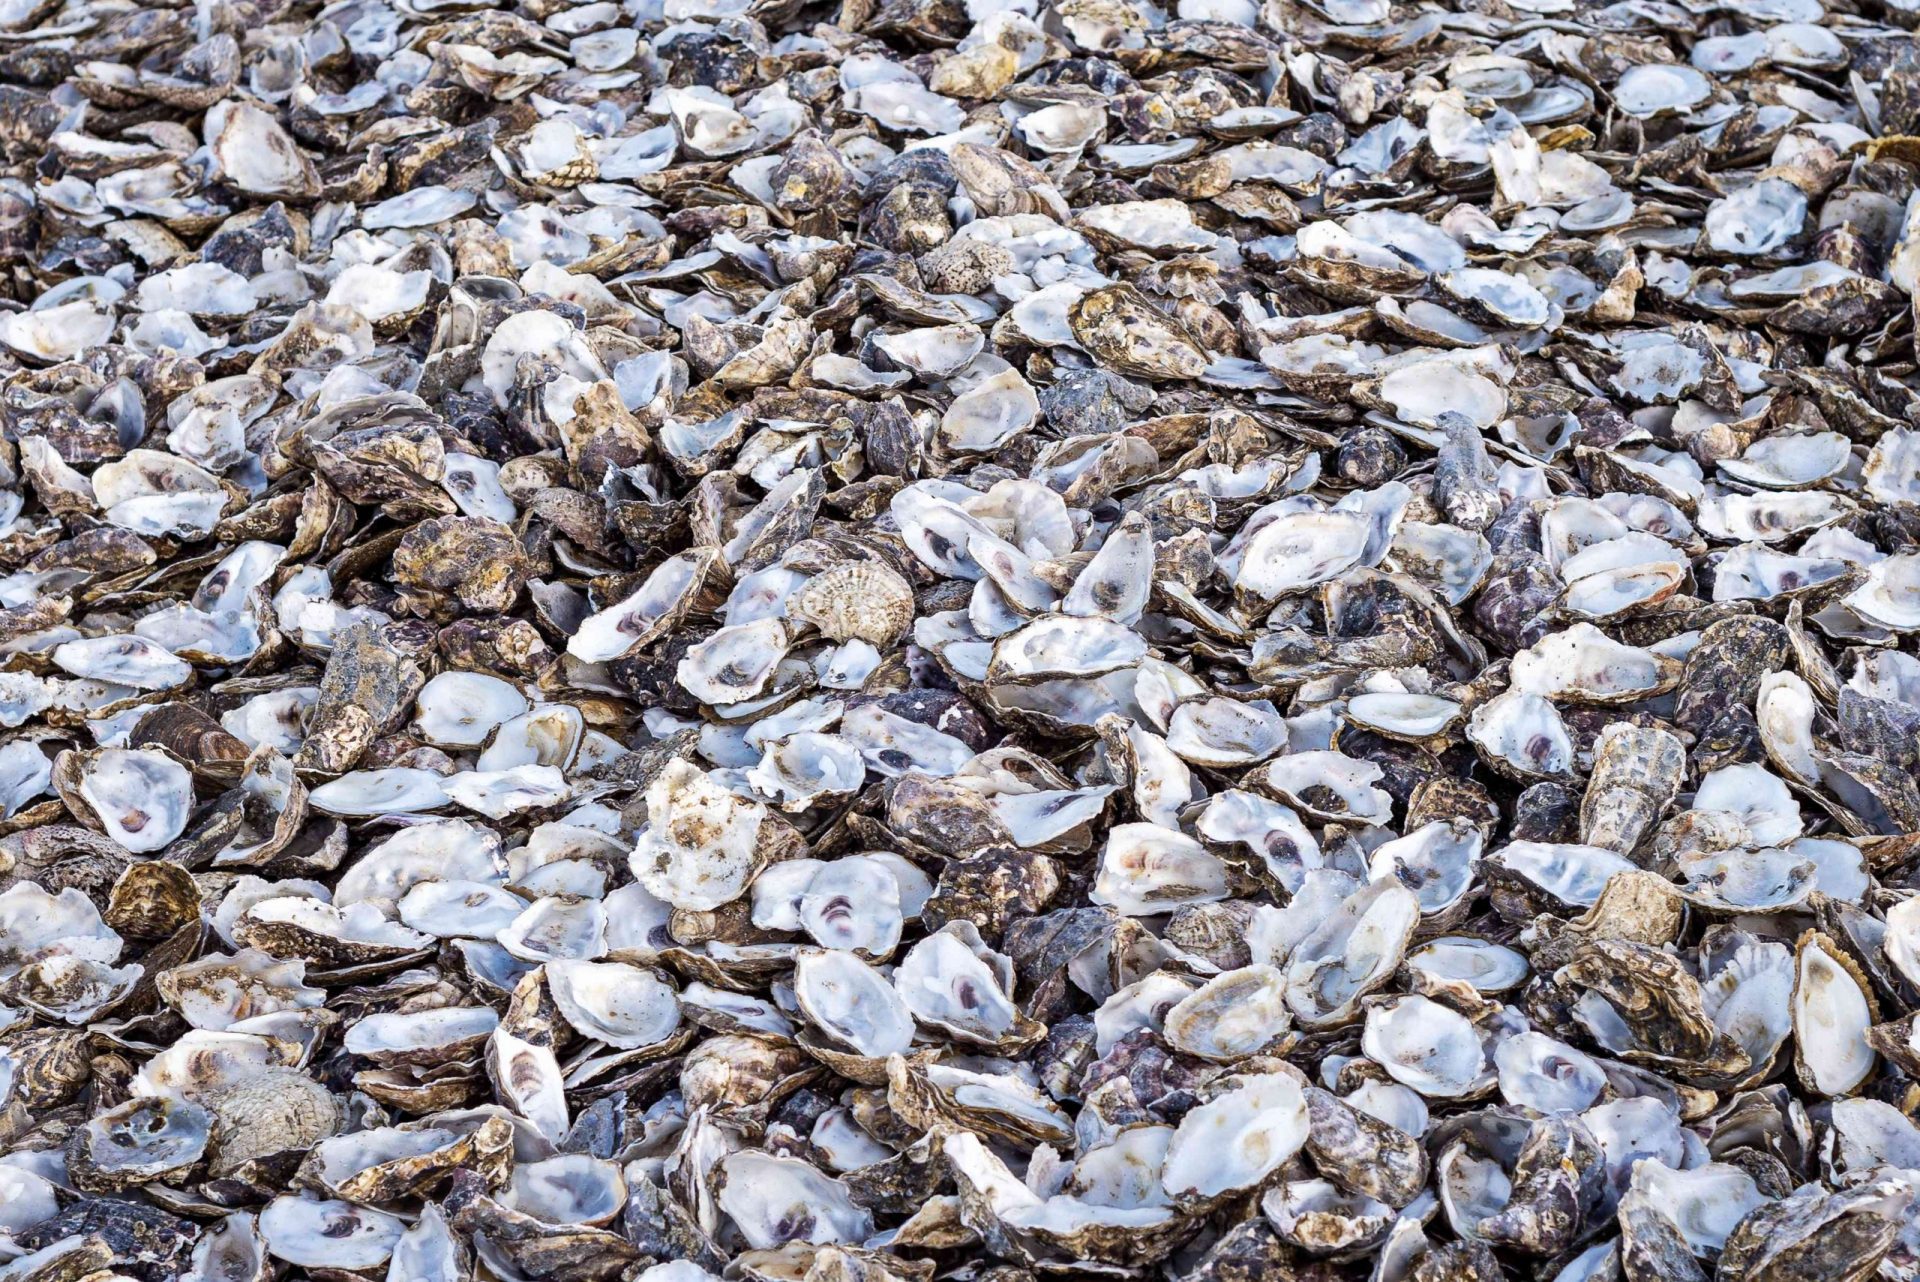 primer plano de un montón de conchas de ostras vacías desechadas